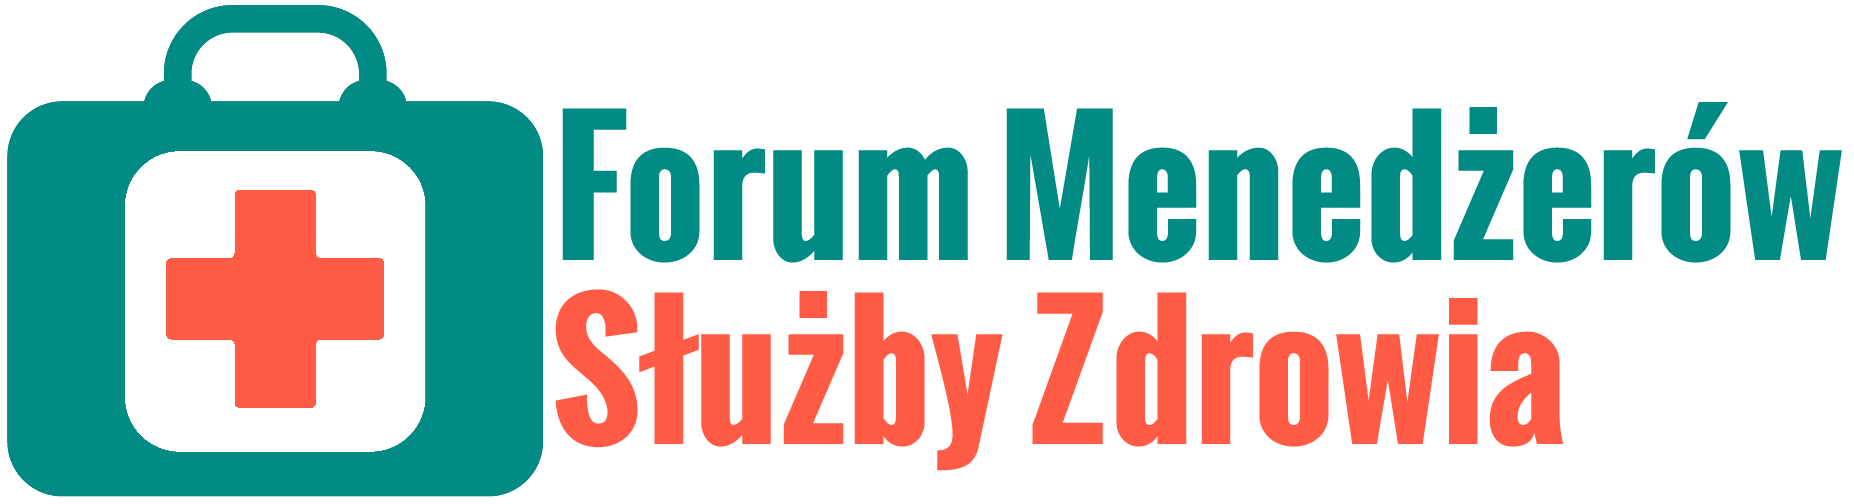 Forum Menederw Suby Zdrowia